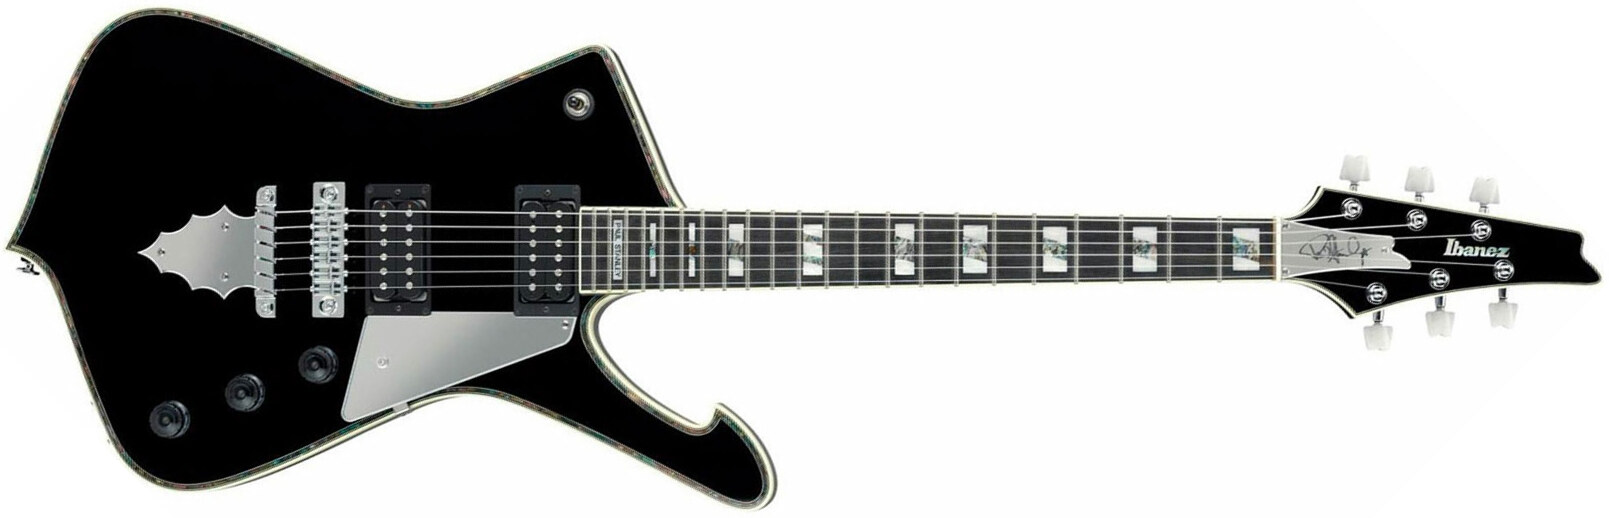 Ibanez Paul Stanley Ps10 Bk Japon Signature Hh Seymour Duncan Ht Eb - Black - Metal electric guitar - Main picture